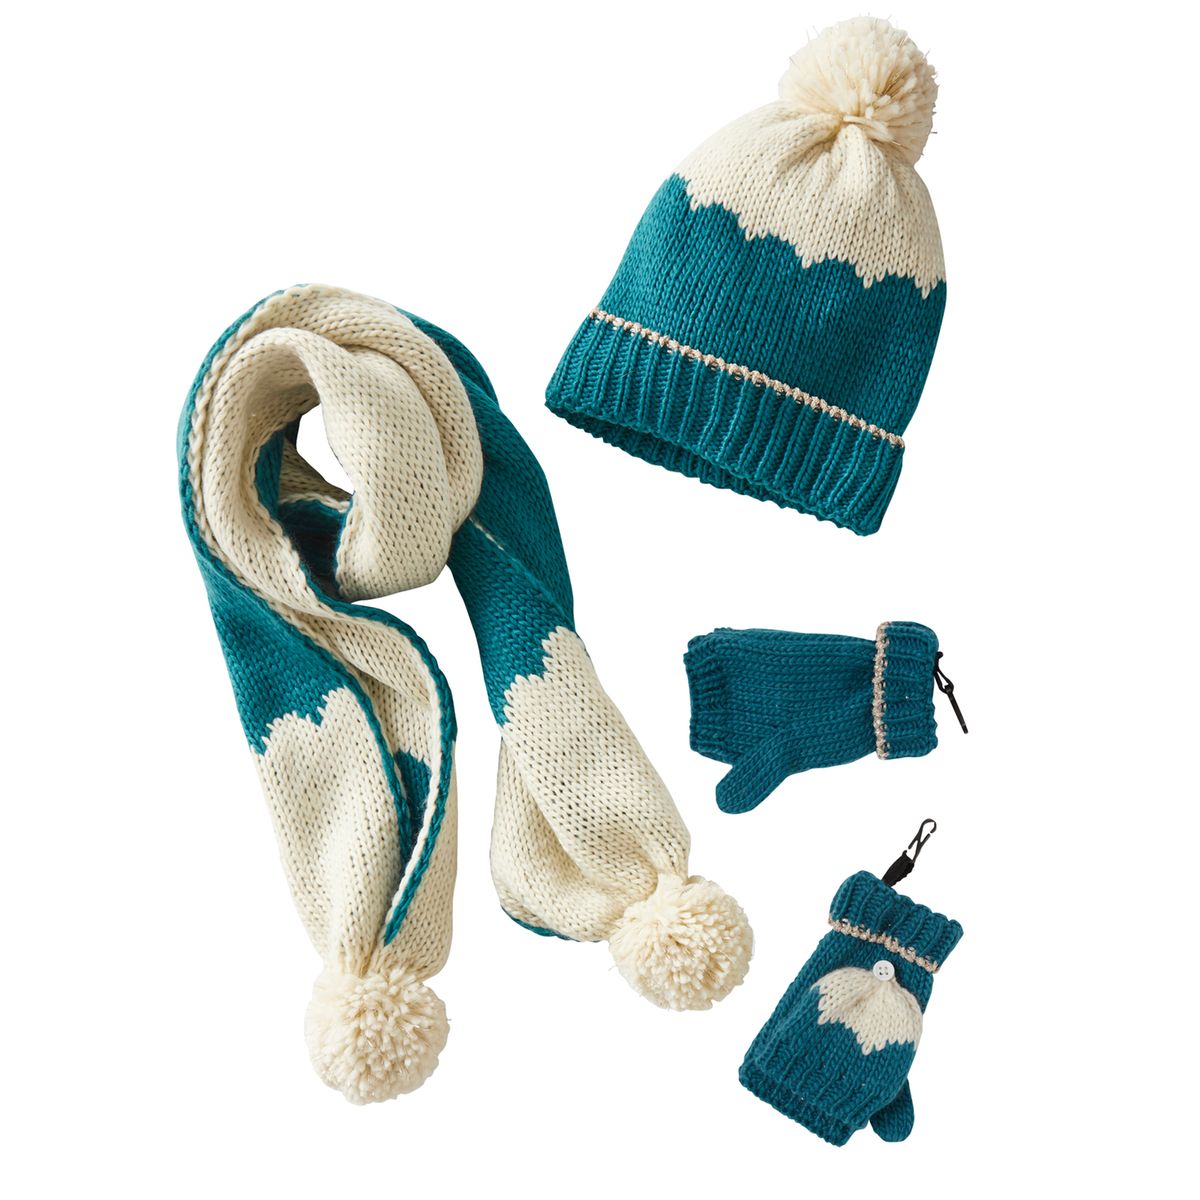 Echarpe, gants & bonnet enfant fille 2 ans - Snood, moufles